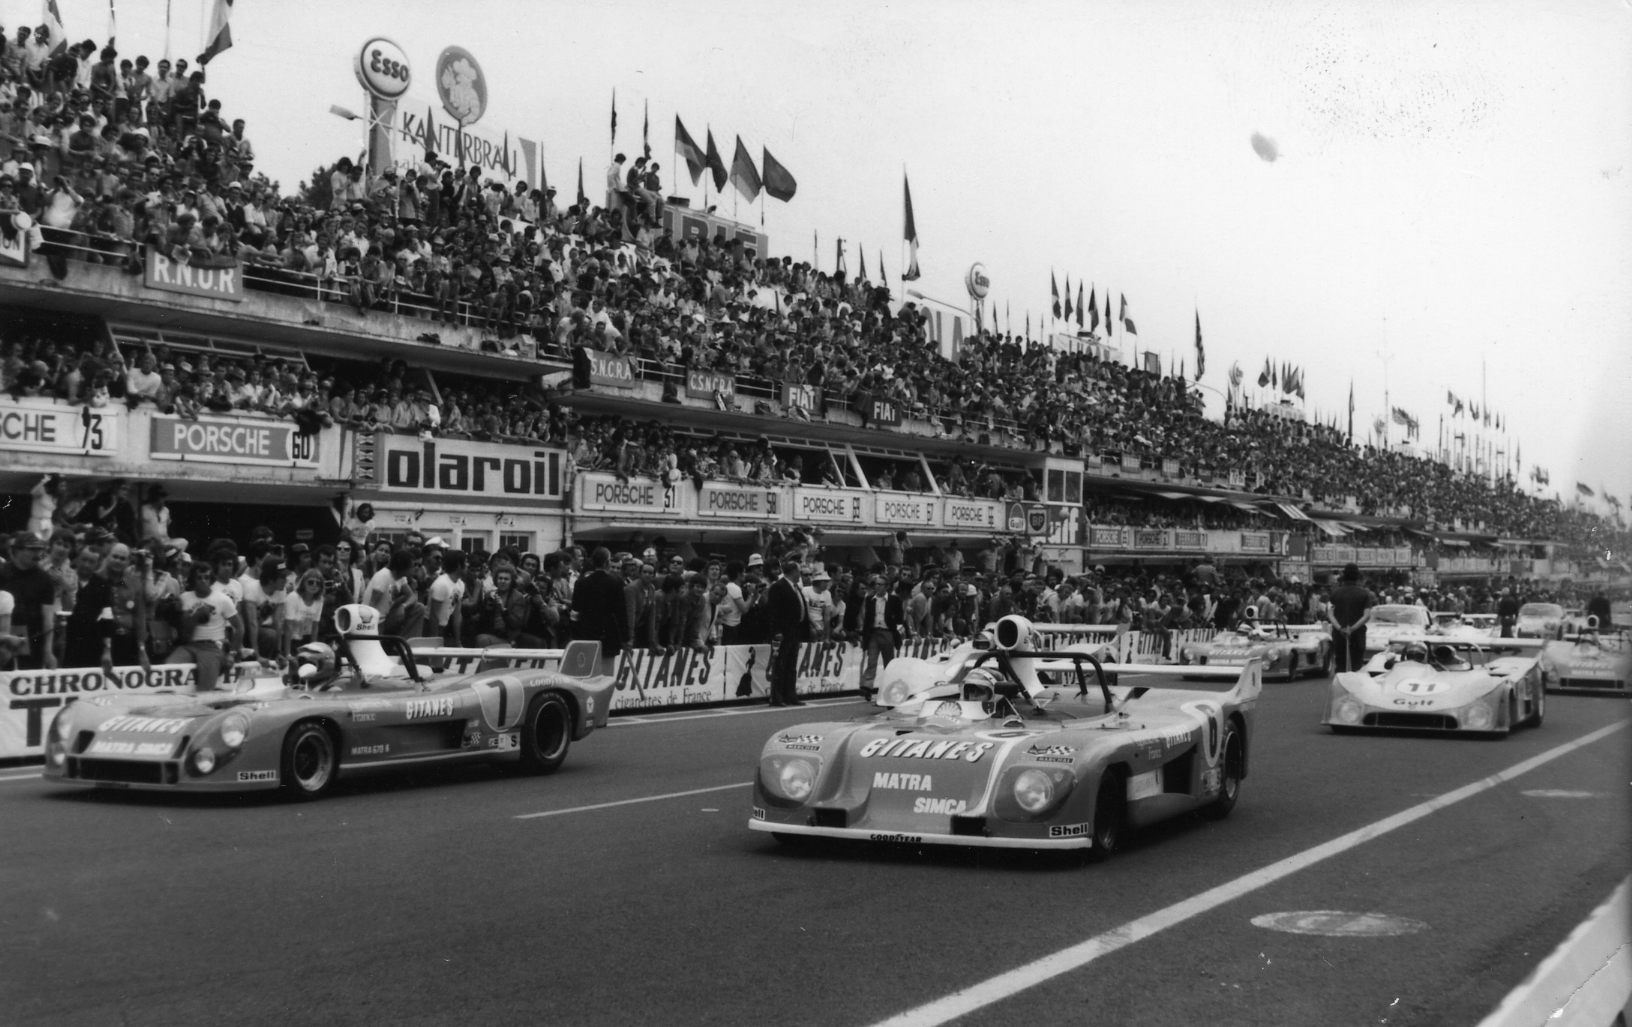 Rétromobile to celebrate centenary of Le Mans 24 Hours race